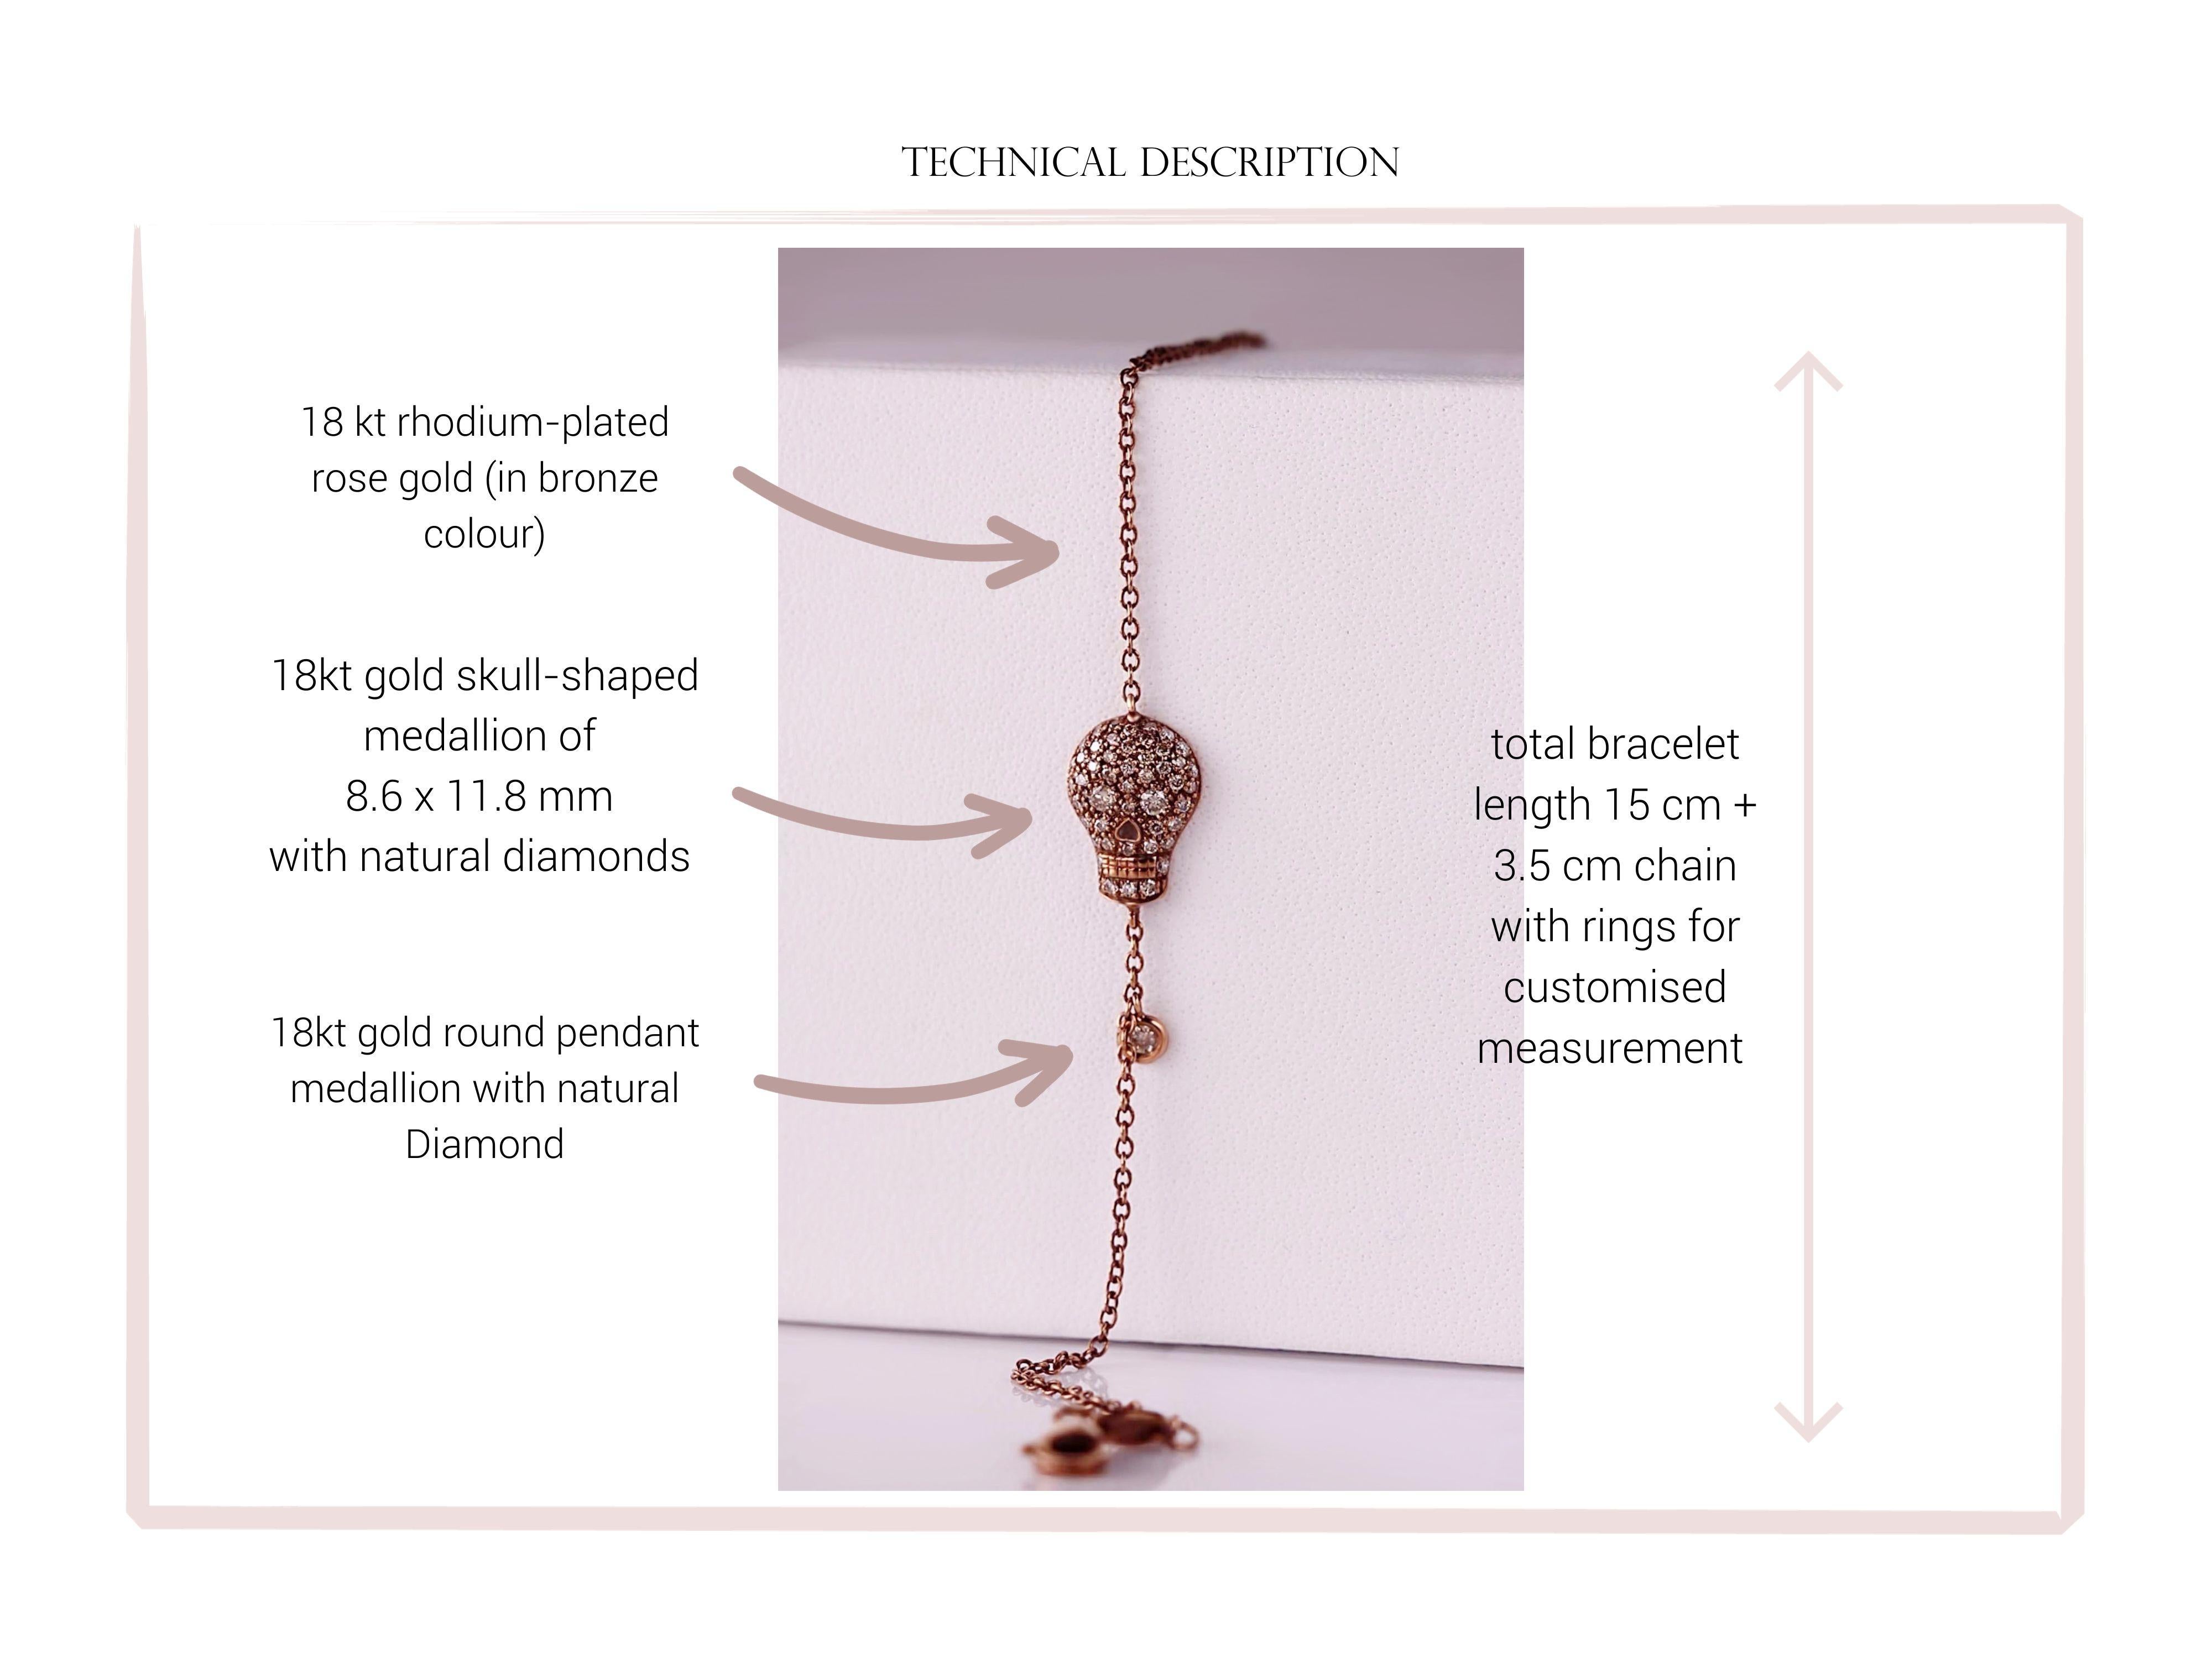 Women's or Men's Chic Rebel: Bronze-Rhodium Rose Gold Bracelet 18kt with Diamond-Studded Skull For Sale